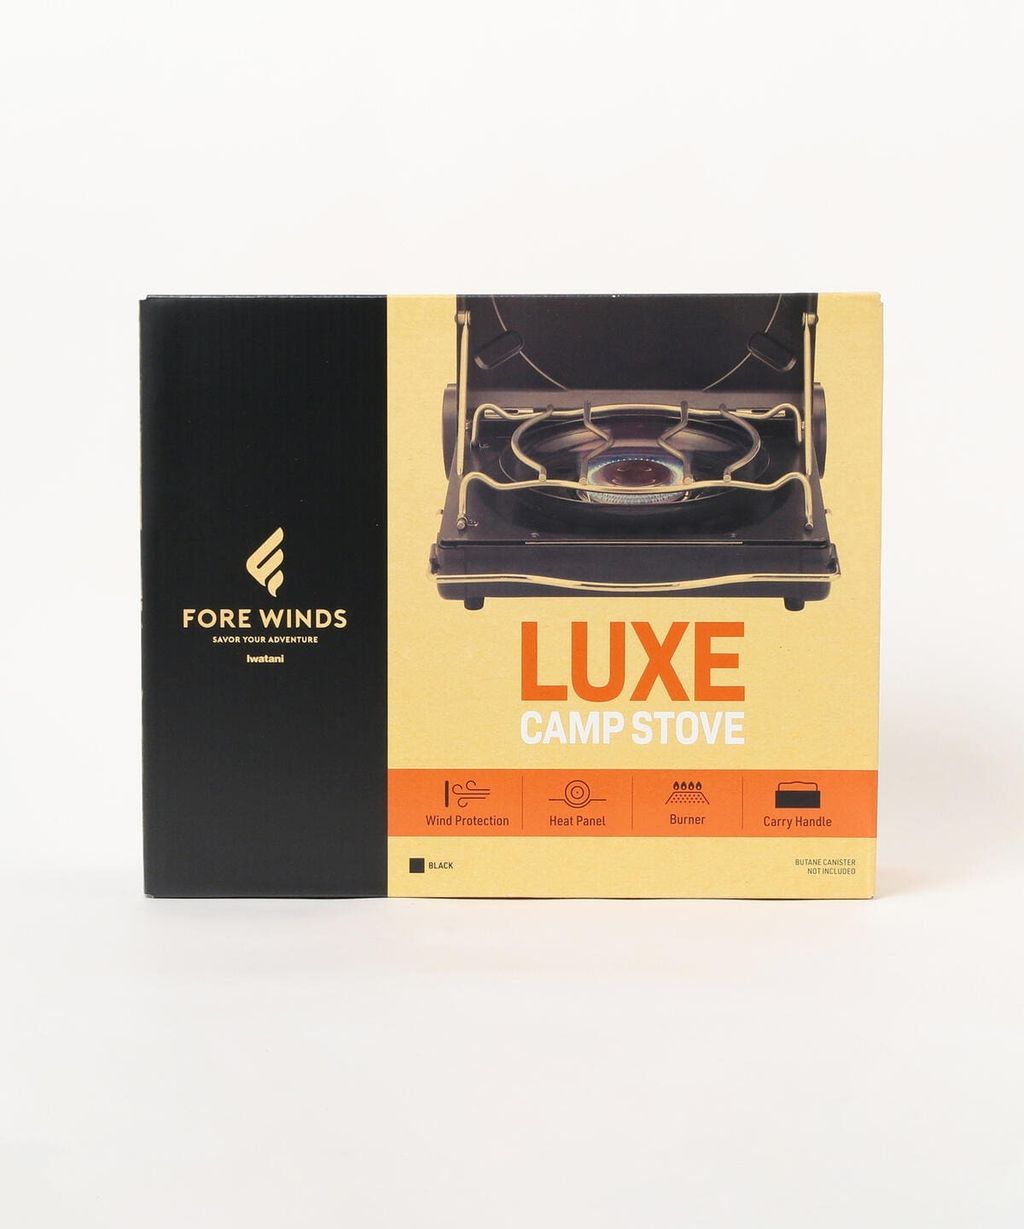 日本Iwatani岩谷FORE WINDS / LUXE CAMP STOVE FW-LS01 Lux 磁式瓦斯爐 